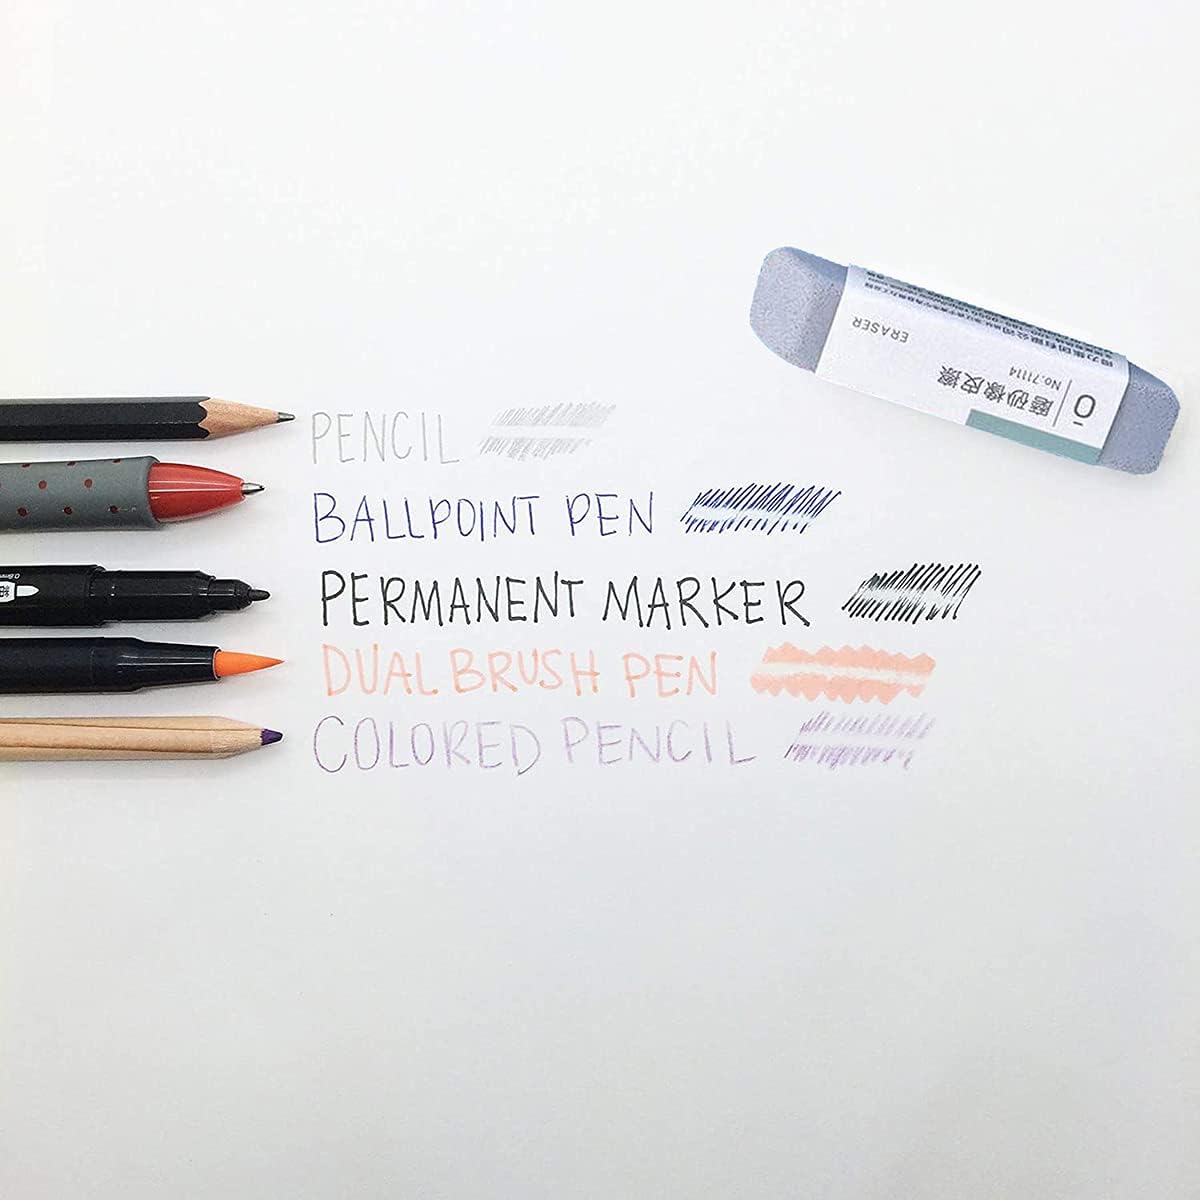 DELI 71114 Sand Eraser for Ink Markings 4-Pack